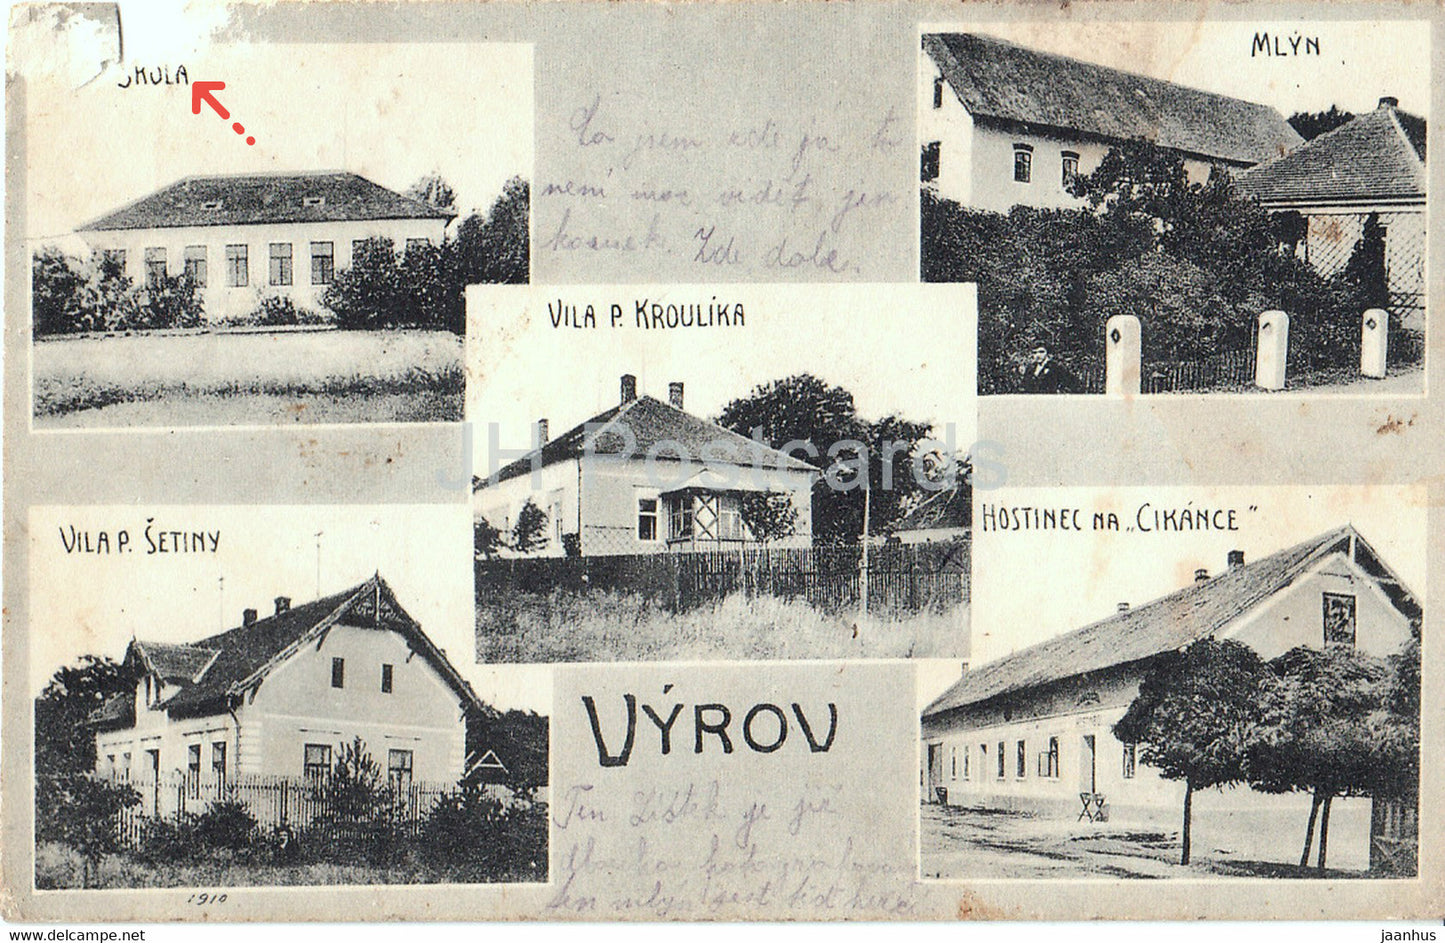 Vyrov - old postcard - 1917 - Czech Republic - used - JH Postcards